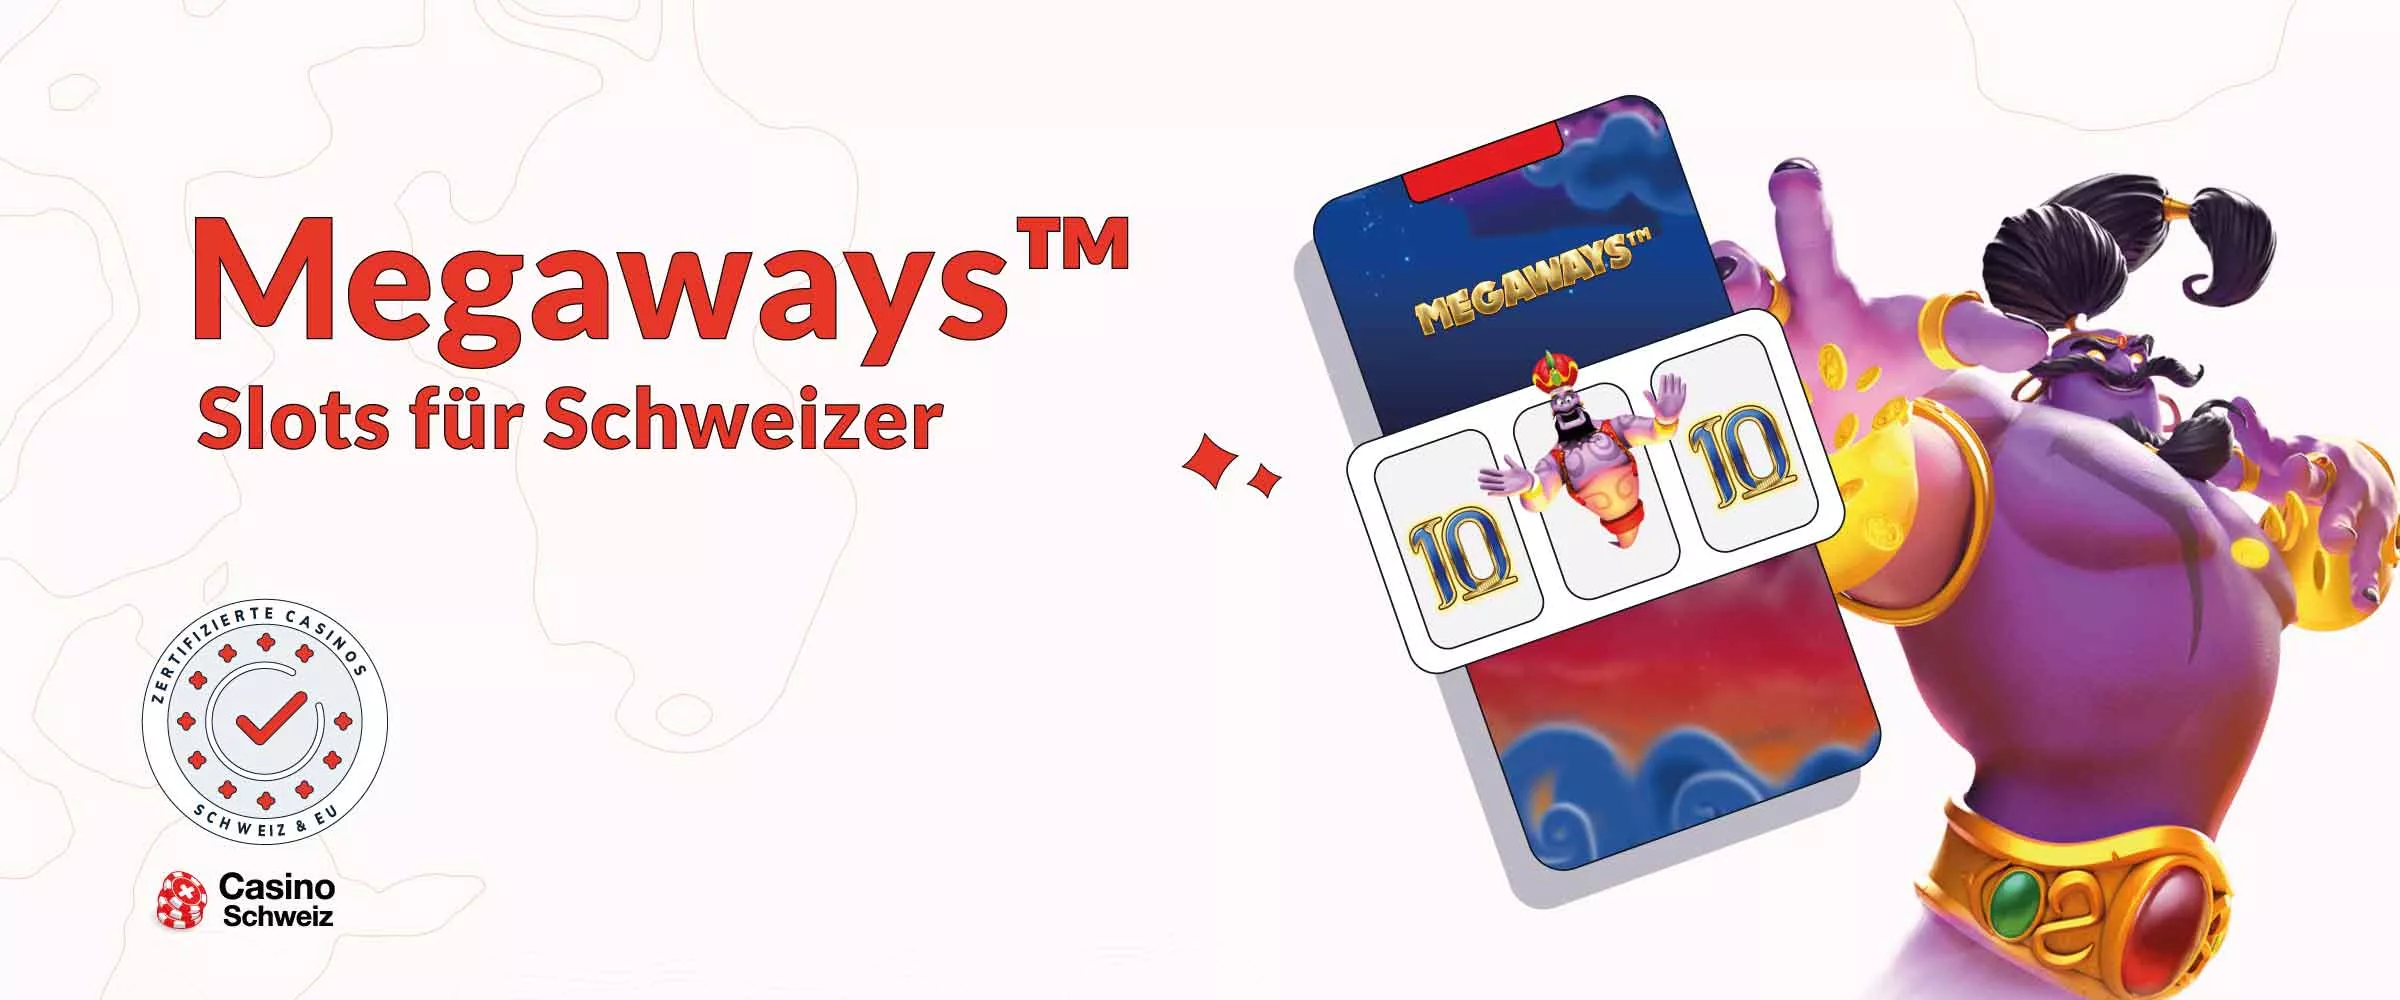 Megaways Slots für Schweizer